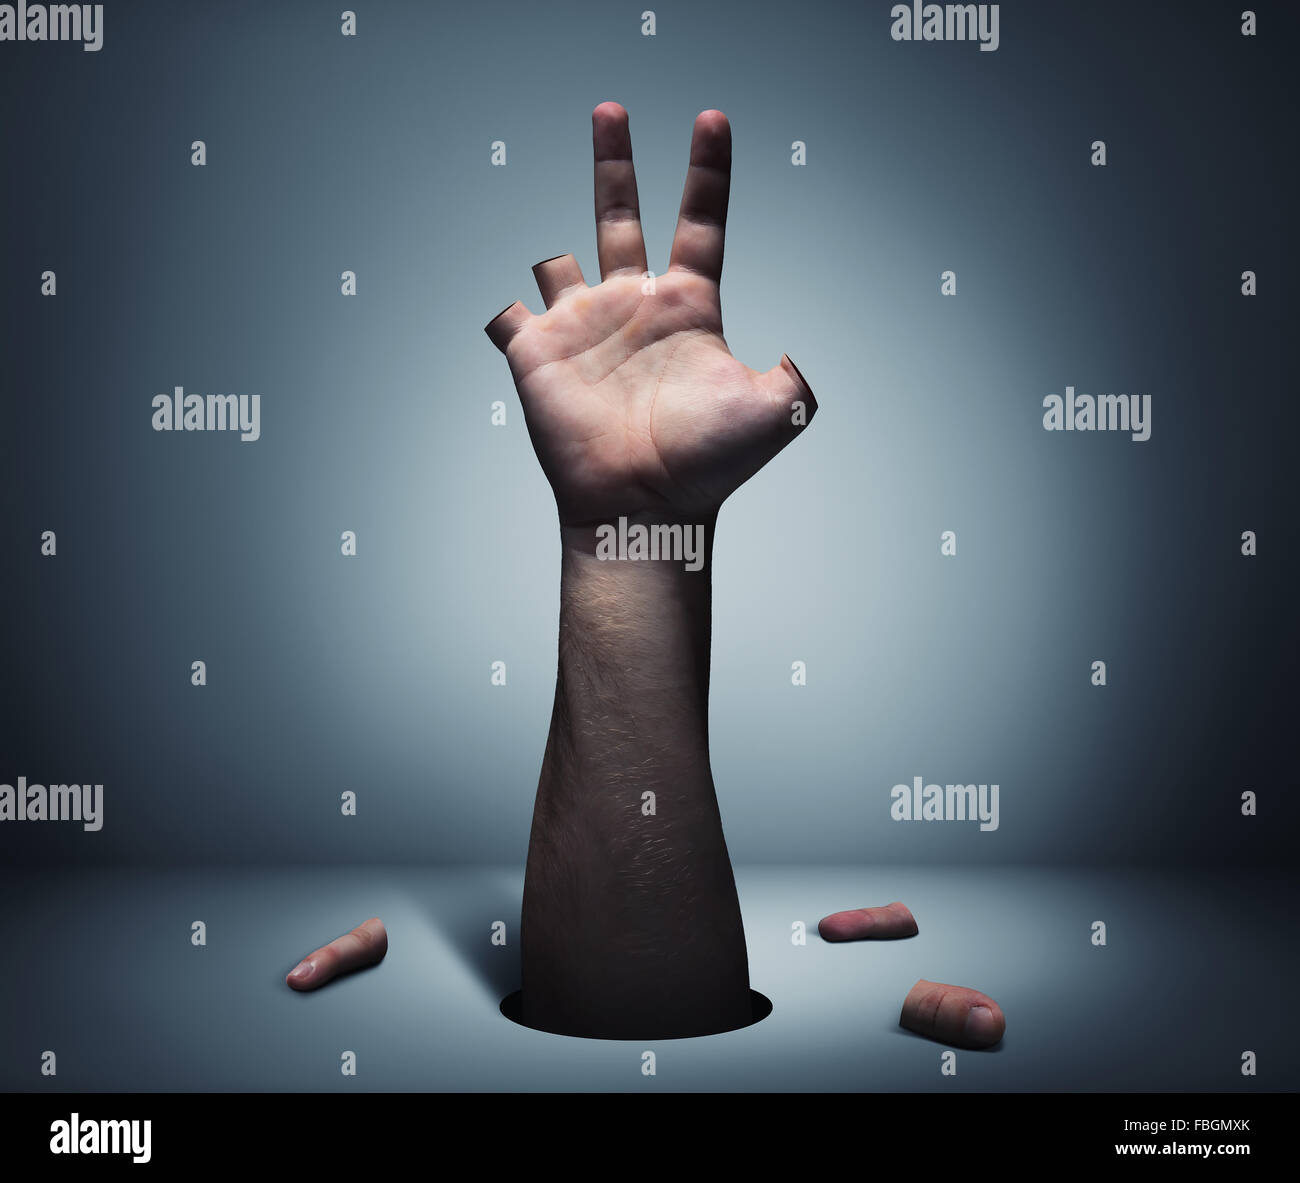 La mano humana con dedos cortados Foto de stock